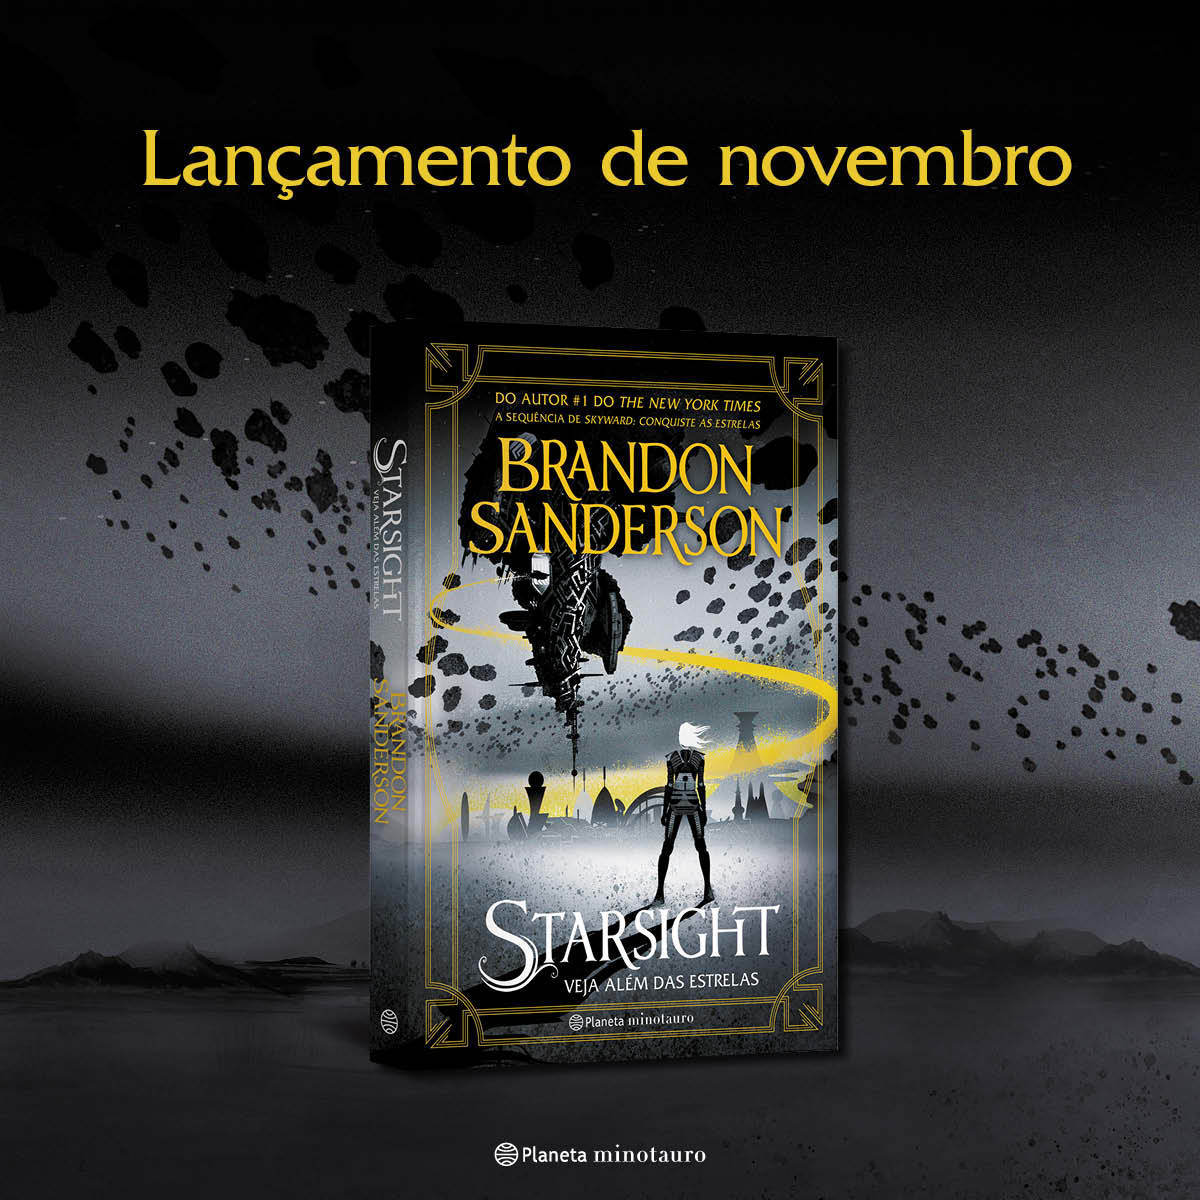  Skyward. Conquiste as estrelas (Em Portugues do Brasil